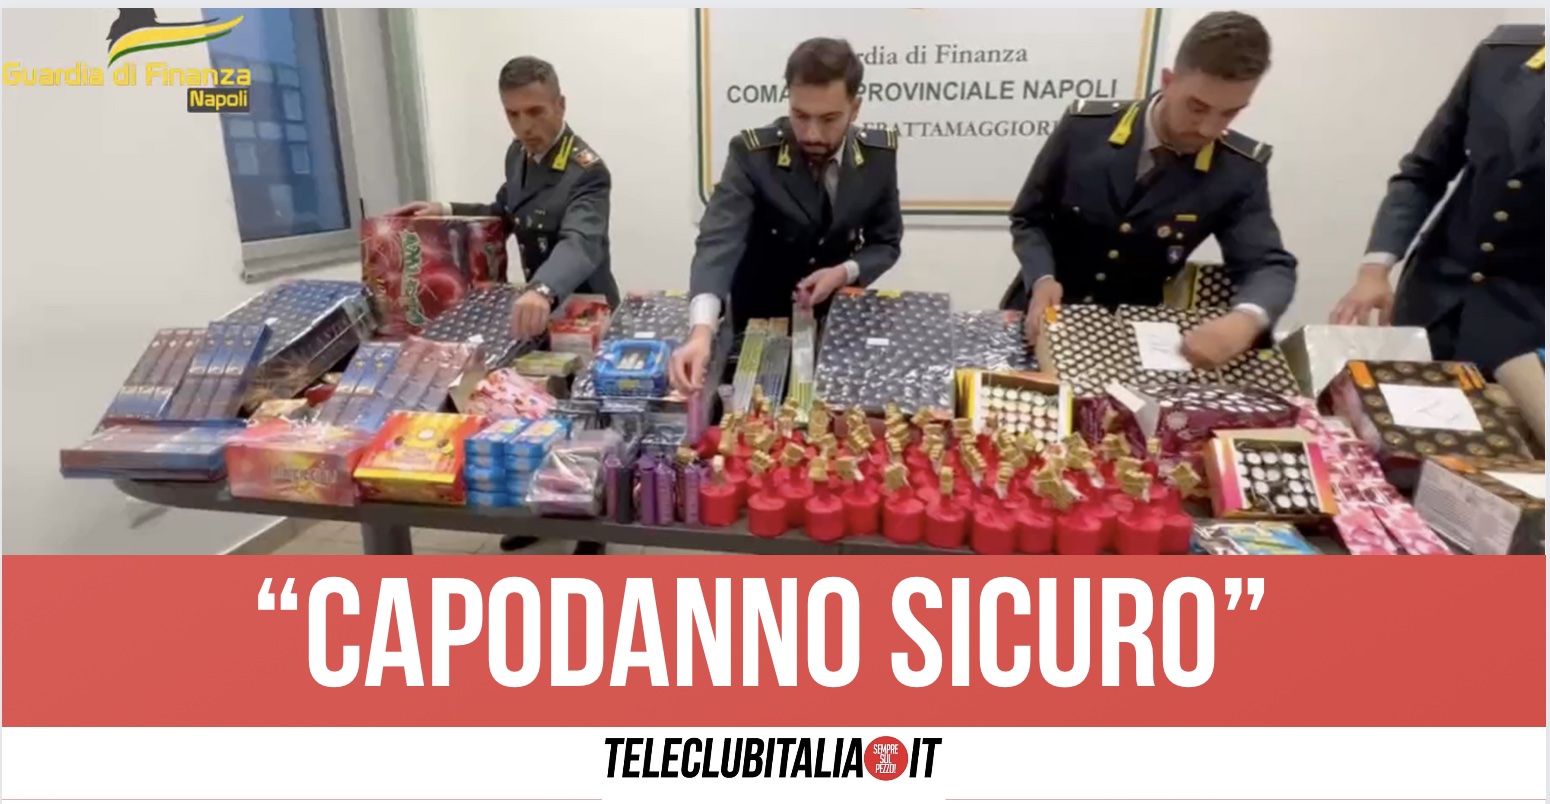 Sequestrati oltre 220mila botti illegali di Capodanno: 10mila scoperti tra Giugliano e Arzano